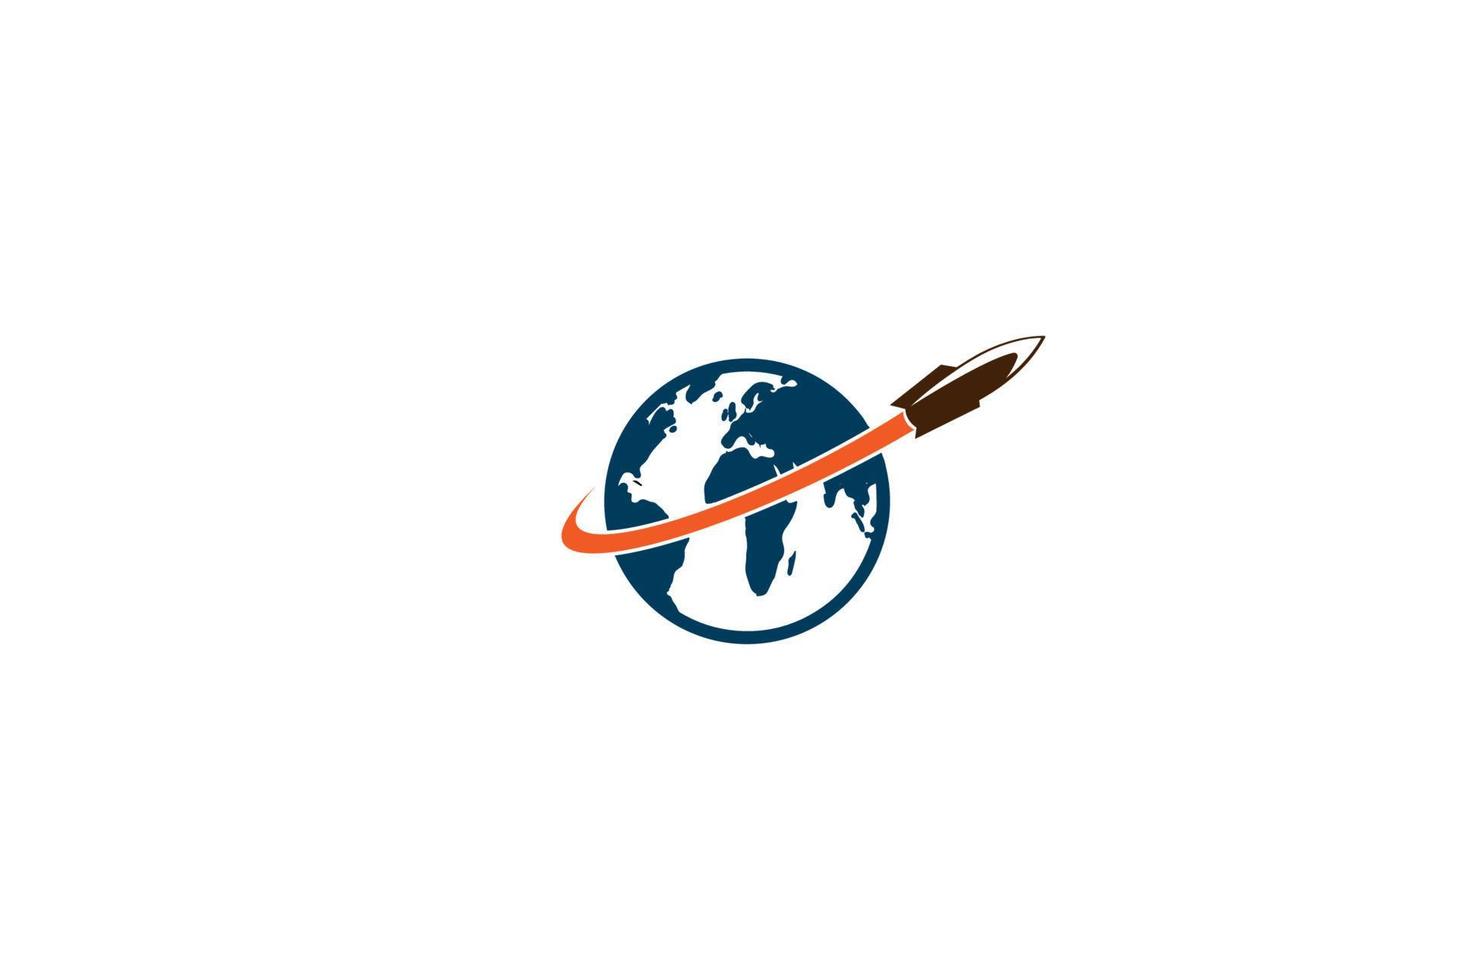 Weltkugel mit Rakete für Wissenschaftsexpedition Logo-Design-Vektor vektor